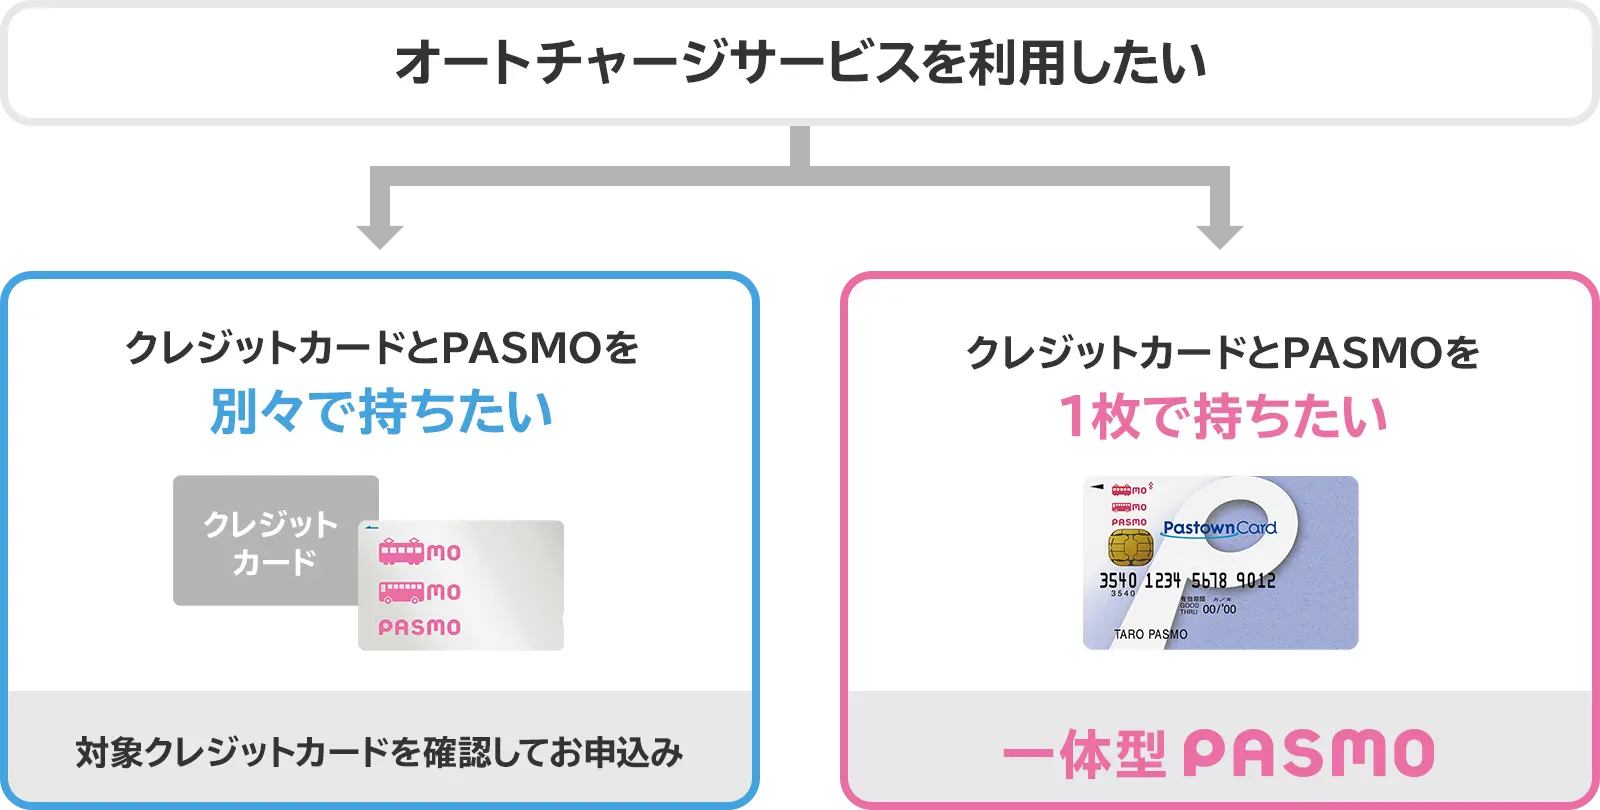 クレジットカードとPASMOを別々で持ちたいなら、対象クレジットカードの確認をしてお申込み。クレジットカードとPASMOを1枚で持ちたいなら、一体型PASMOのお申込み。